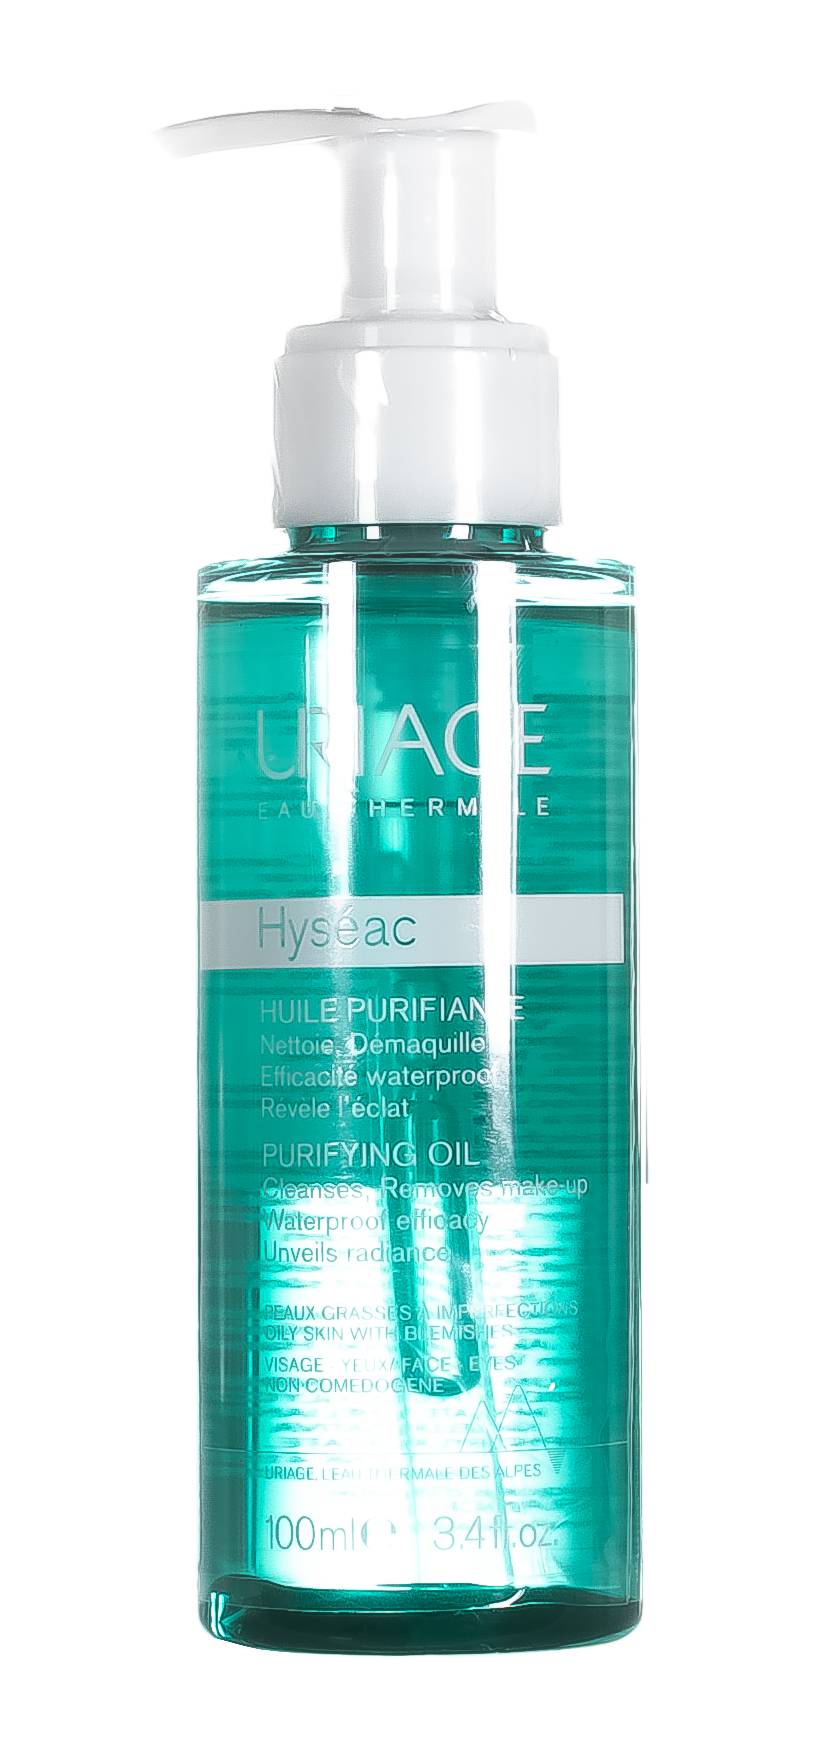 Uriage Очищающее масло для комбинированной, жирной, проблемной кожи, 100 мл (Uriage, Hyseac)